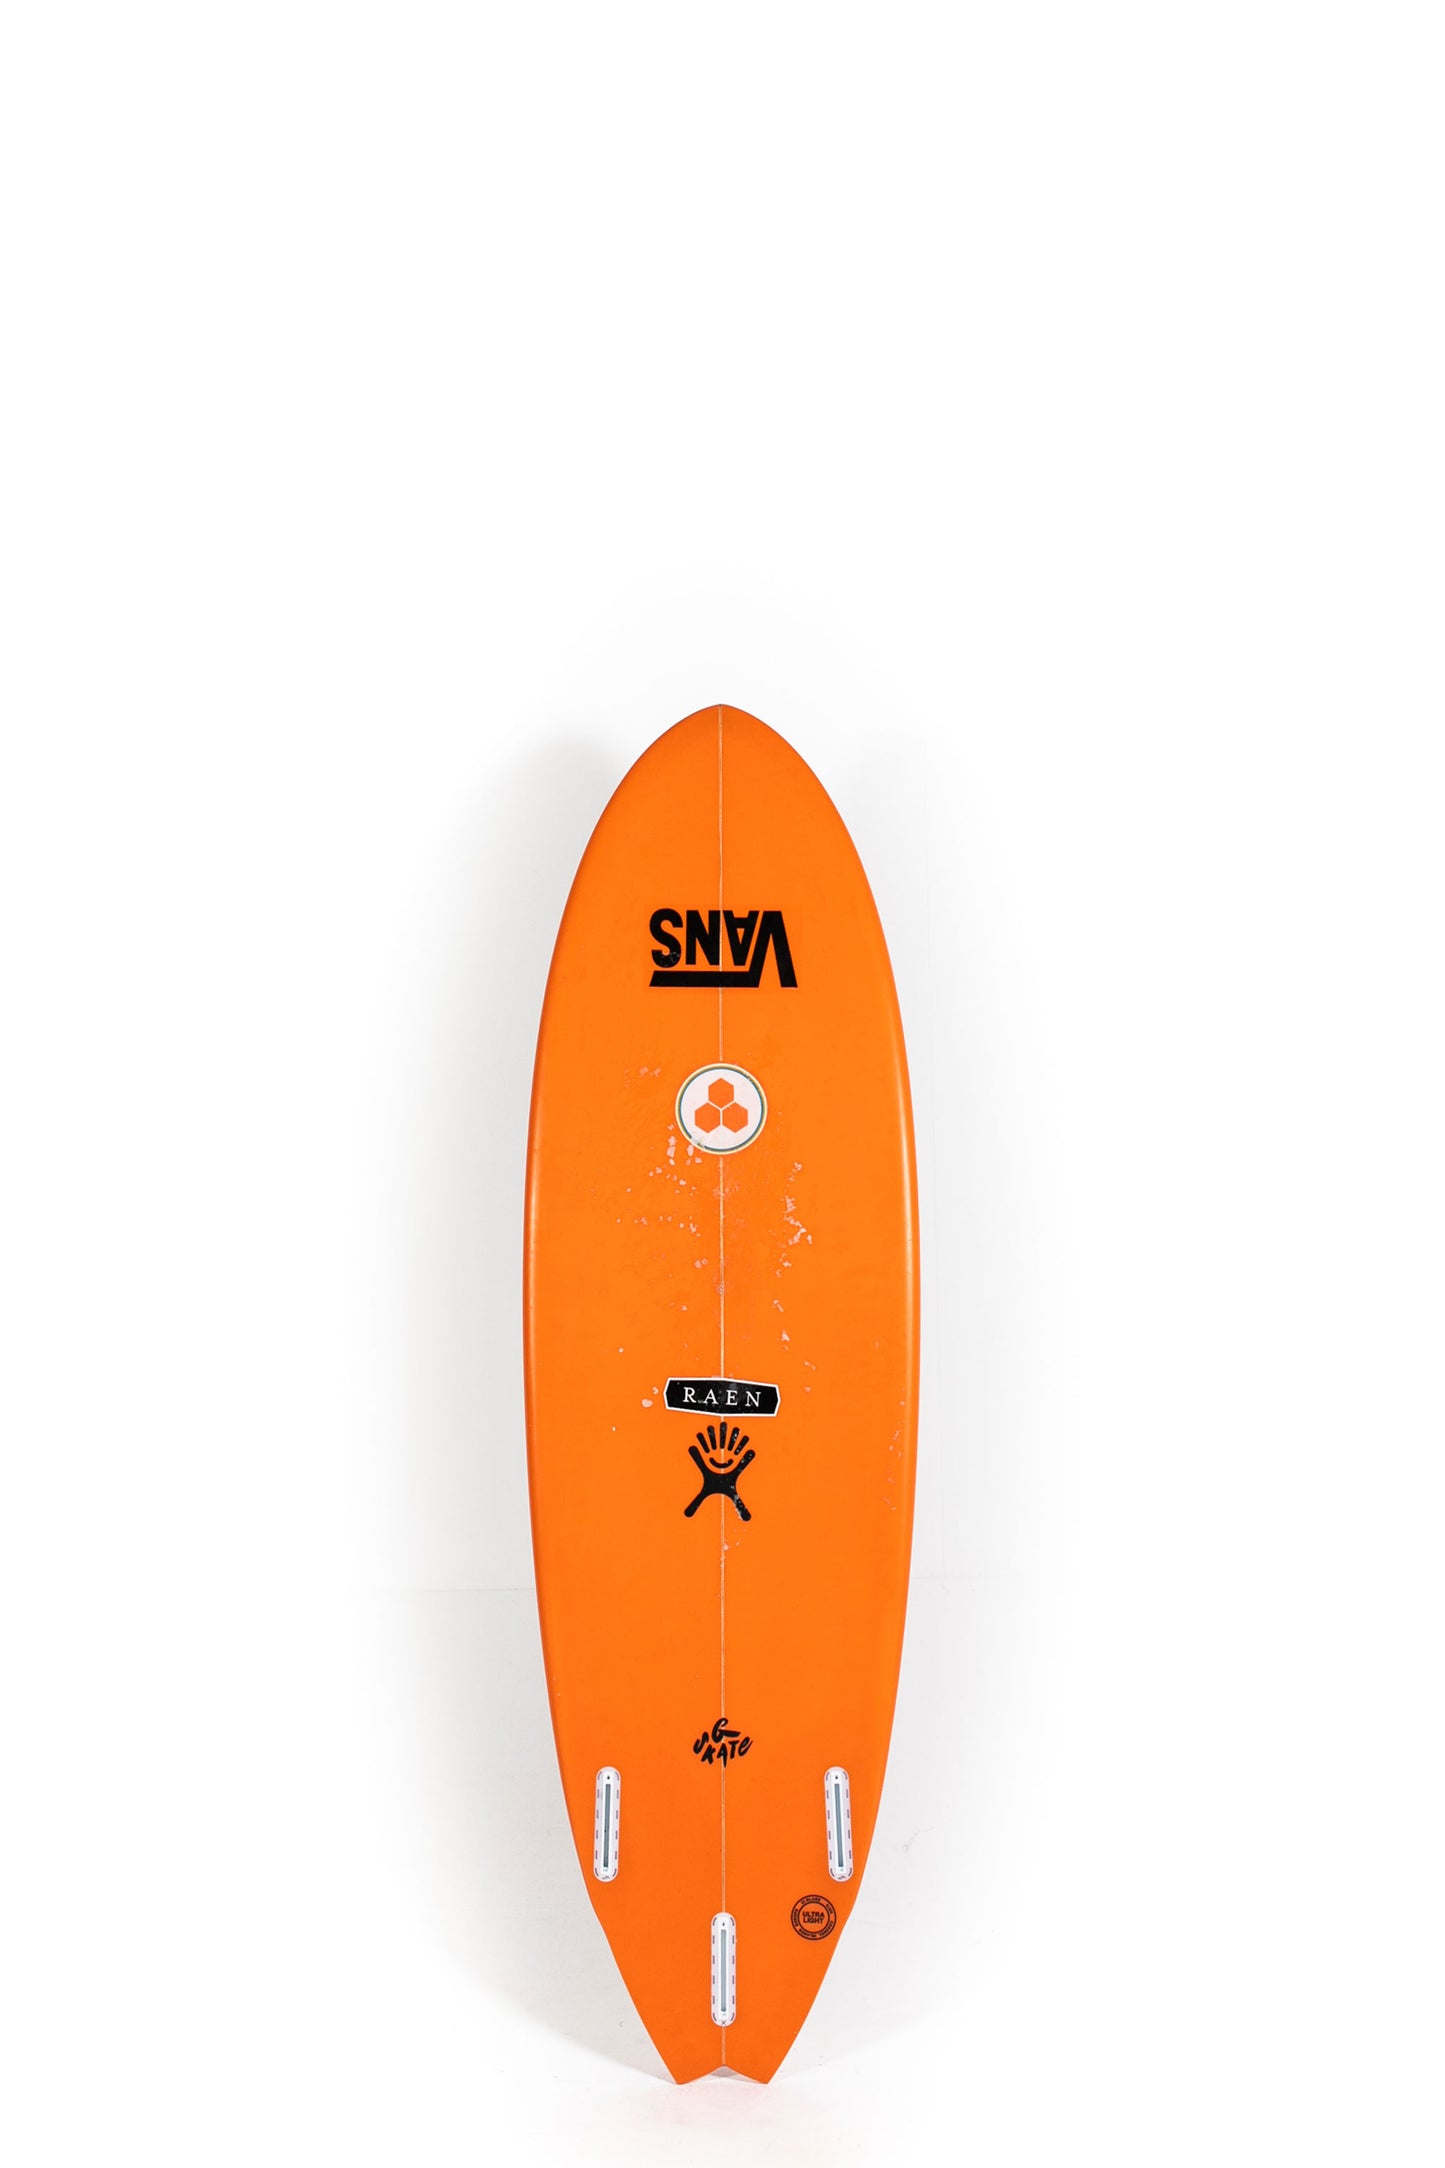 Pukas surf Shop - Channel Islands - G-Skate by Al Merrick - 6'0" x 20 1/2 x 2 3/4 - 38,04L - CI28740